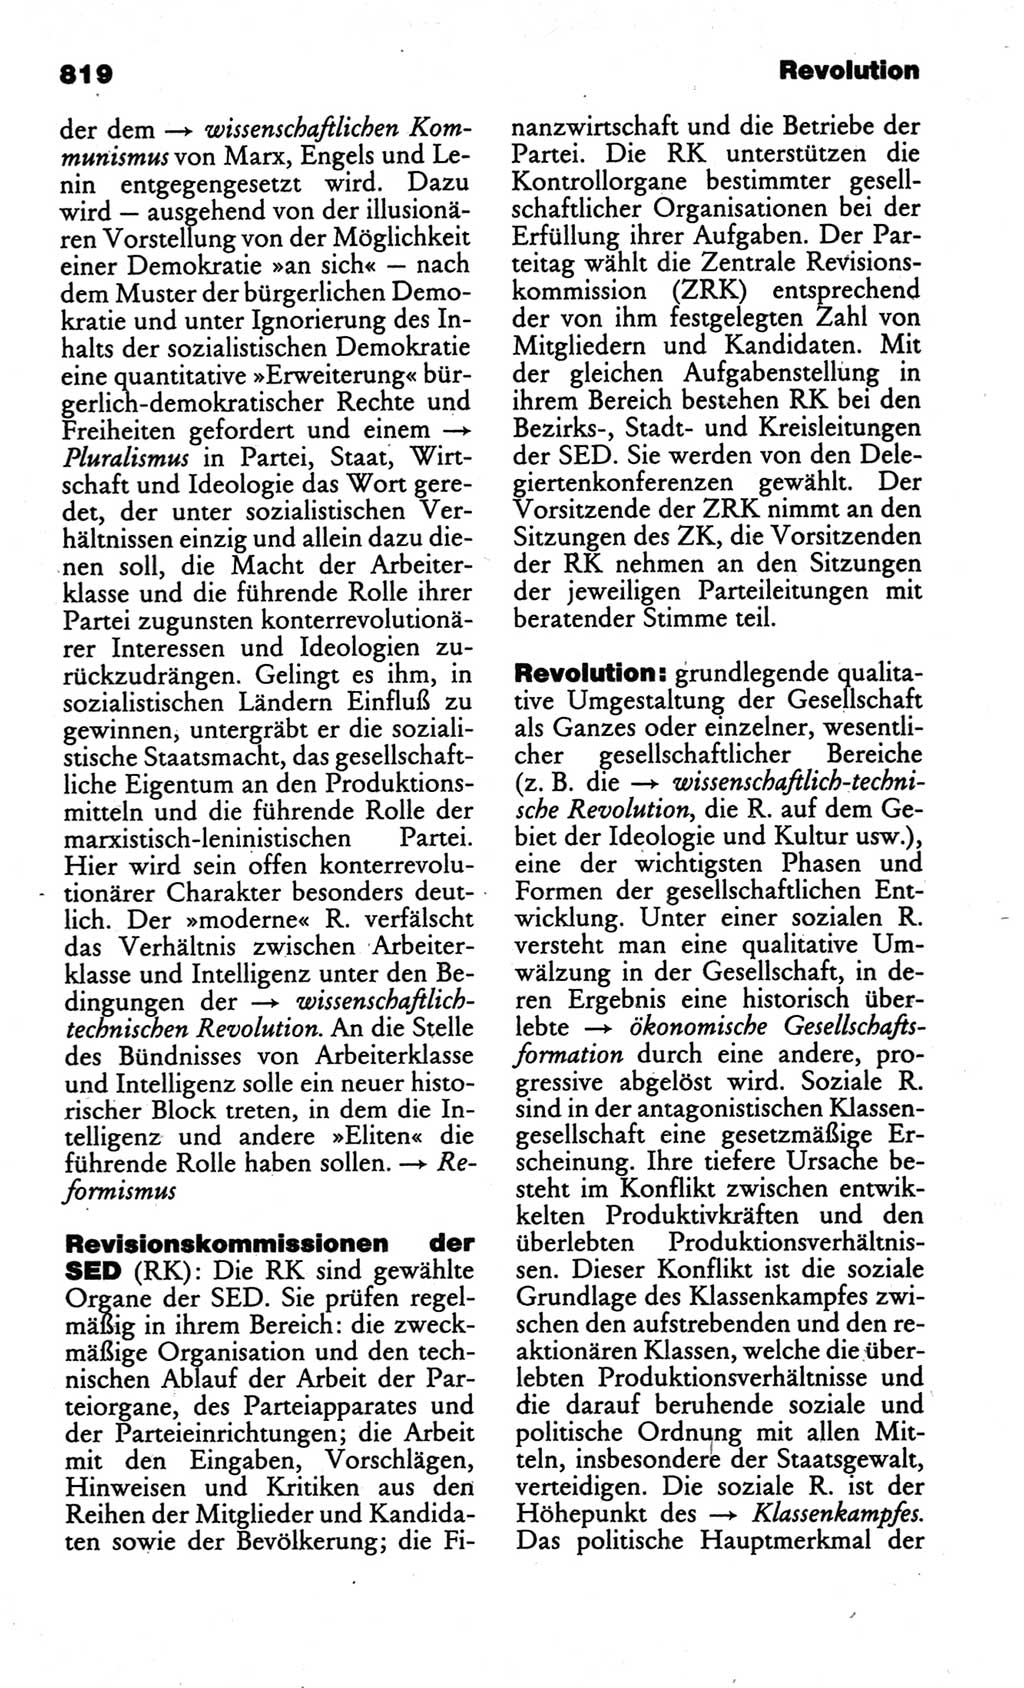 Kleines politisches Wörterbuch [Deutsche Demokratische Republik (DDR)] 1986, Seite 819 (Kl. pol. Wb. DDR 1986, S. 819)